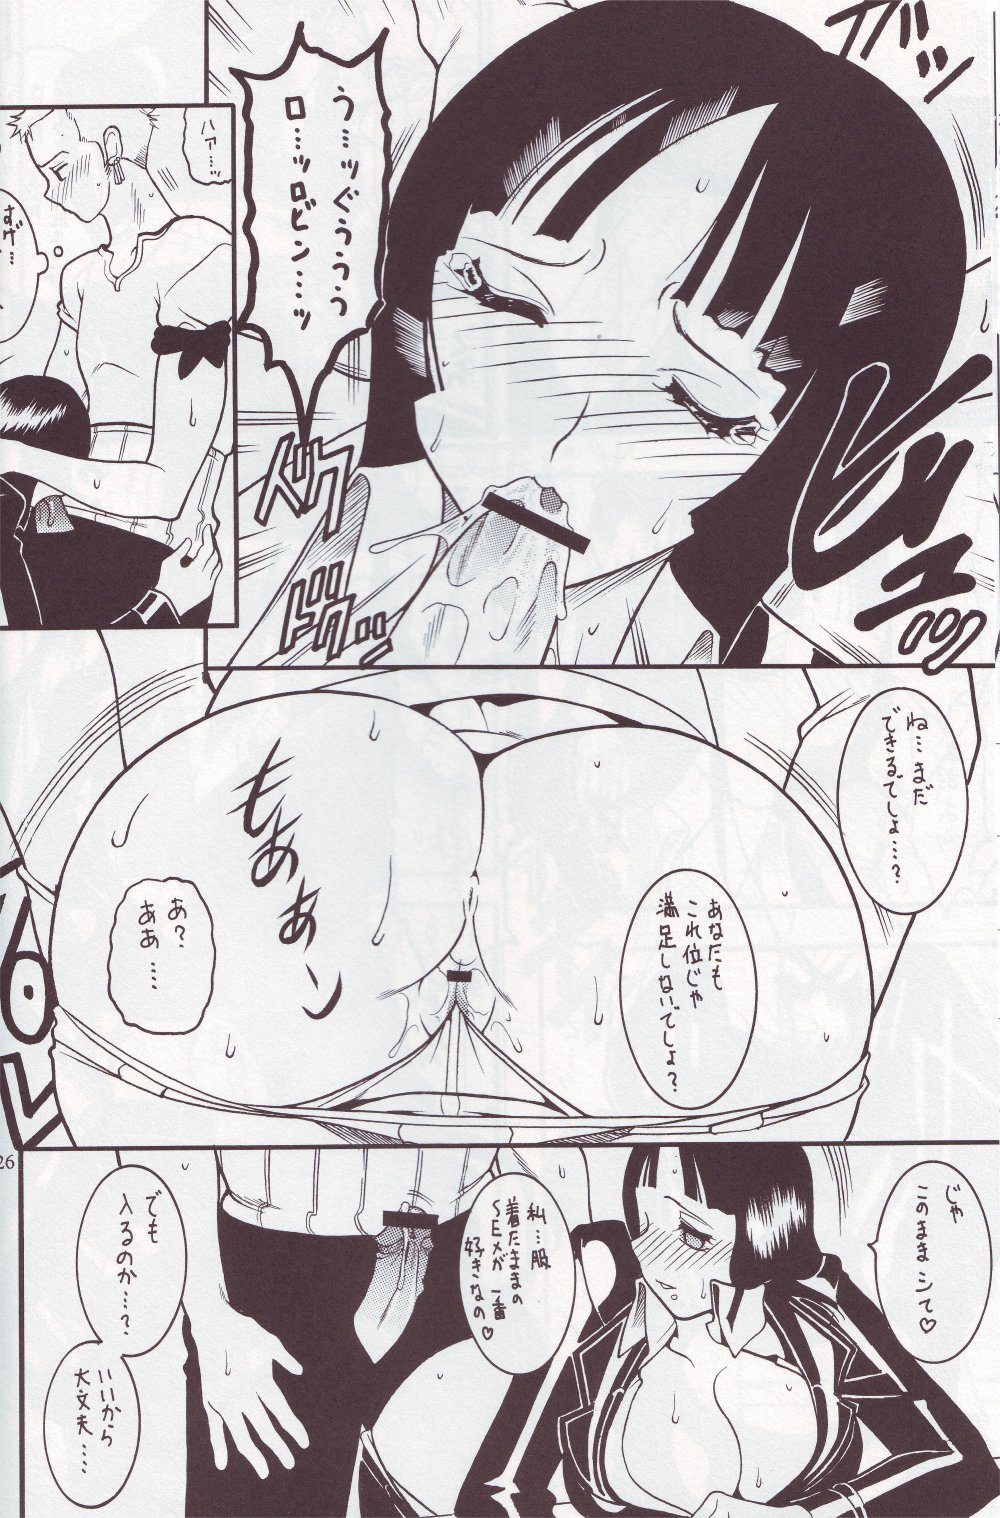 [SEMEDAIN G (Mizutani Mint, Mokkouyou Bond)] SEMEDAIN G WORKS vol.24 - Shuukan Shounen Jump Hon 4 (Bleach, One Piece) page 25 full